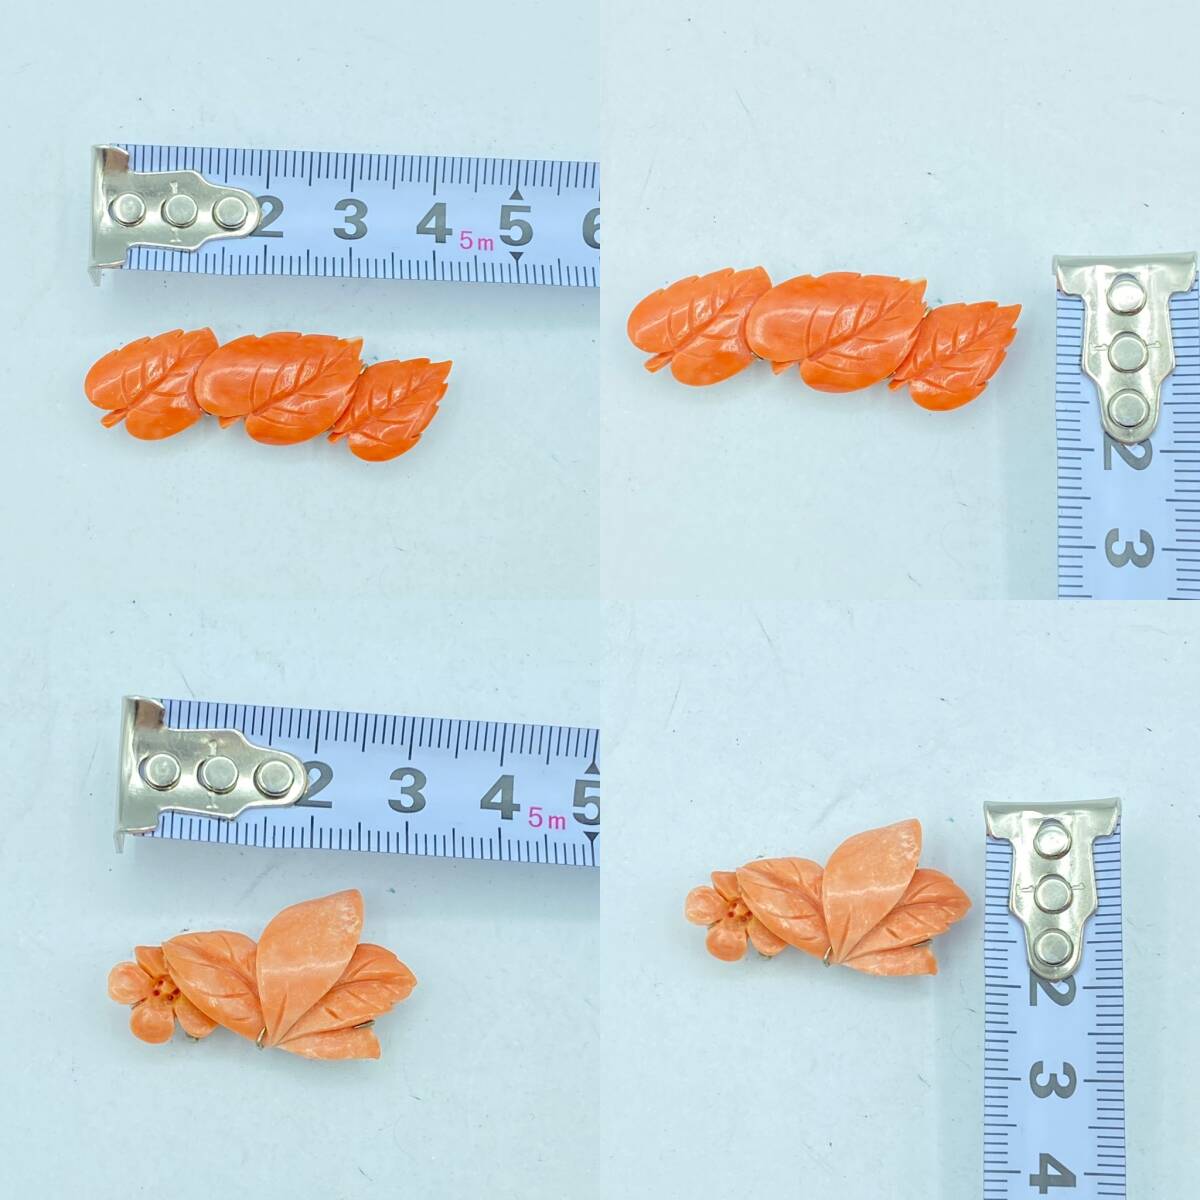 [R11].. коралл coral orange коралл розовый коралл obidome . суммировать 4 пункт аксессуары для кимоно текущее состояние товар 